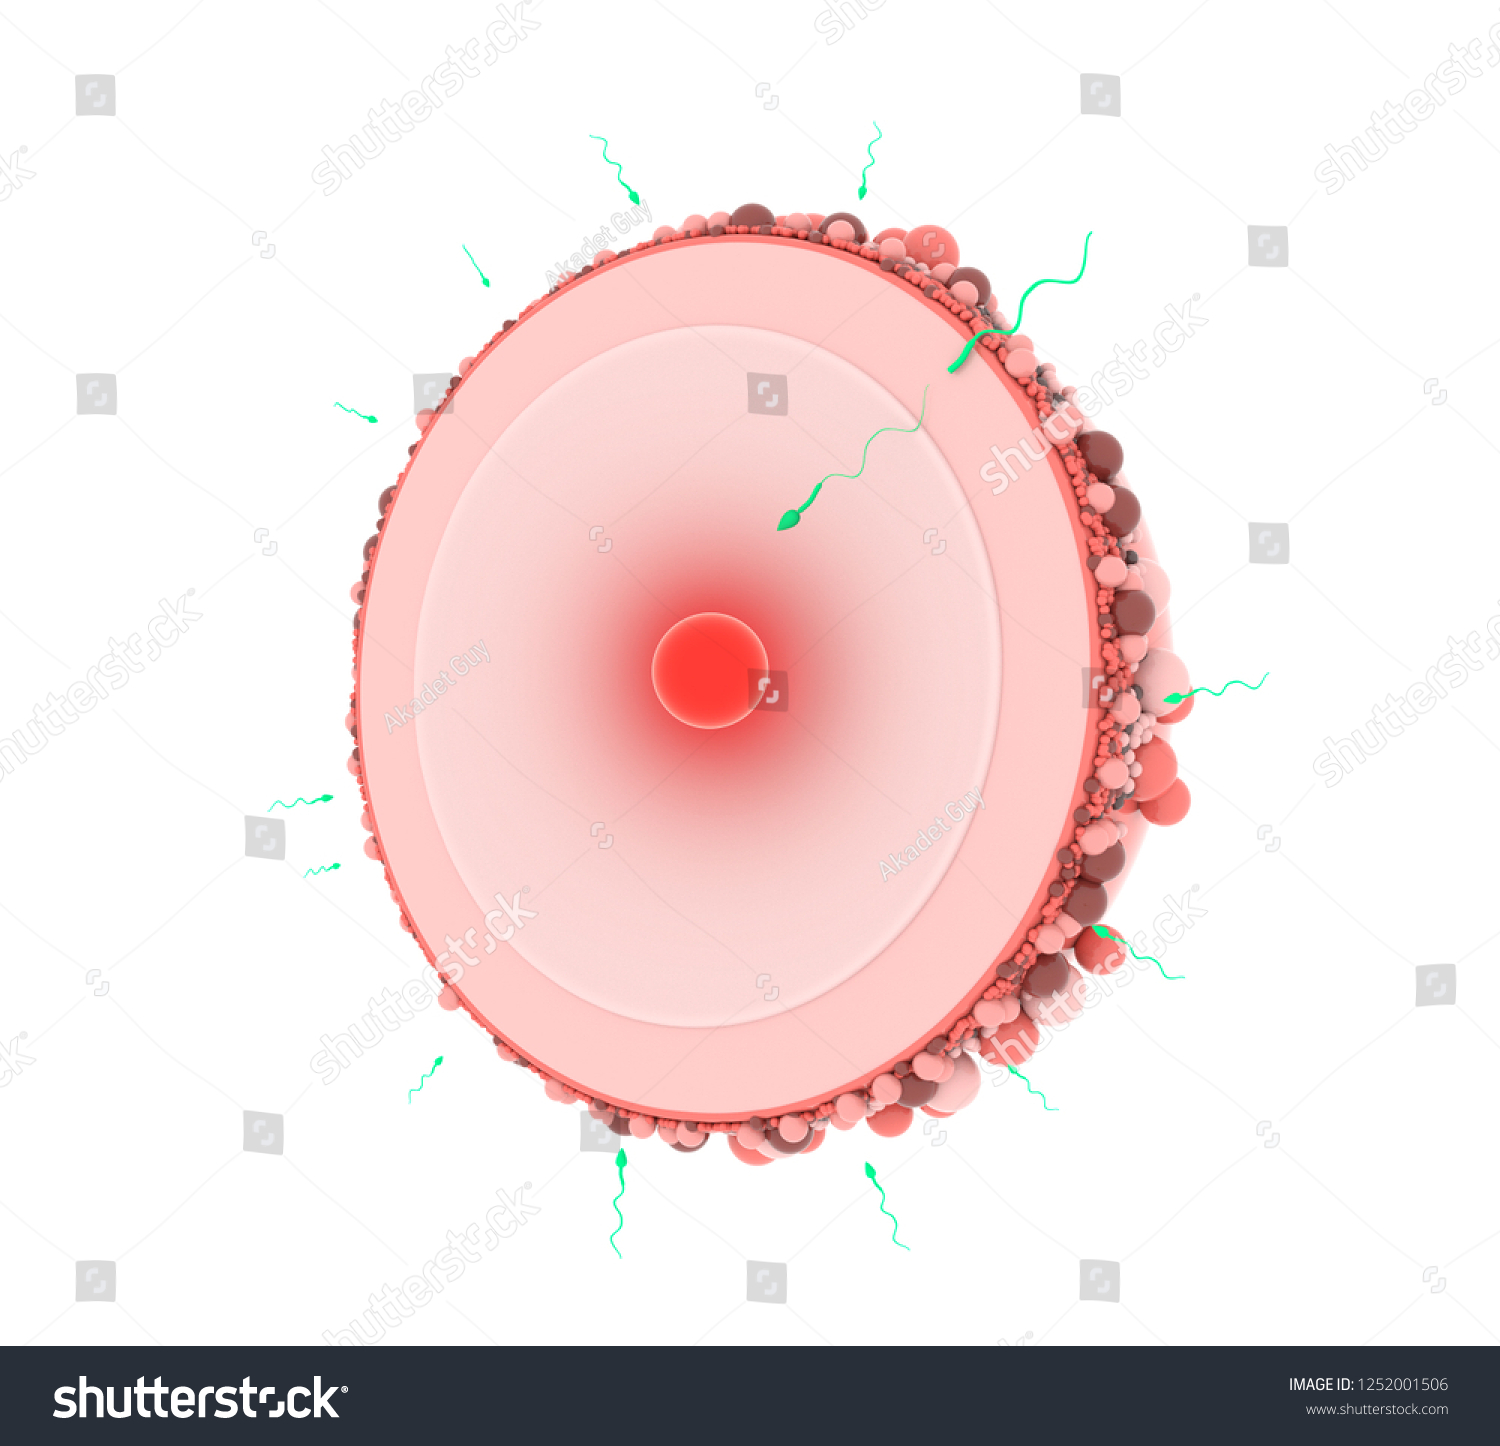 Sperm Egg Cell Naturalhuman Fertilization Process Stock Illustration 1252001506 Shutterstock 5237